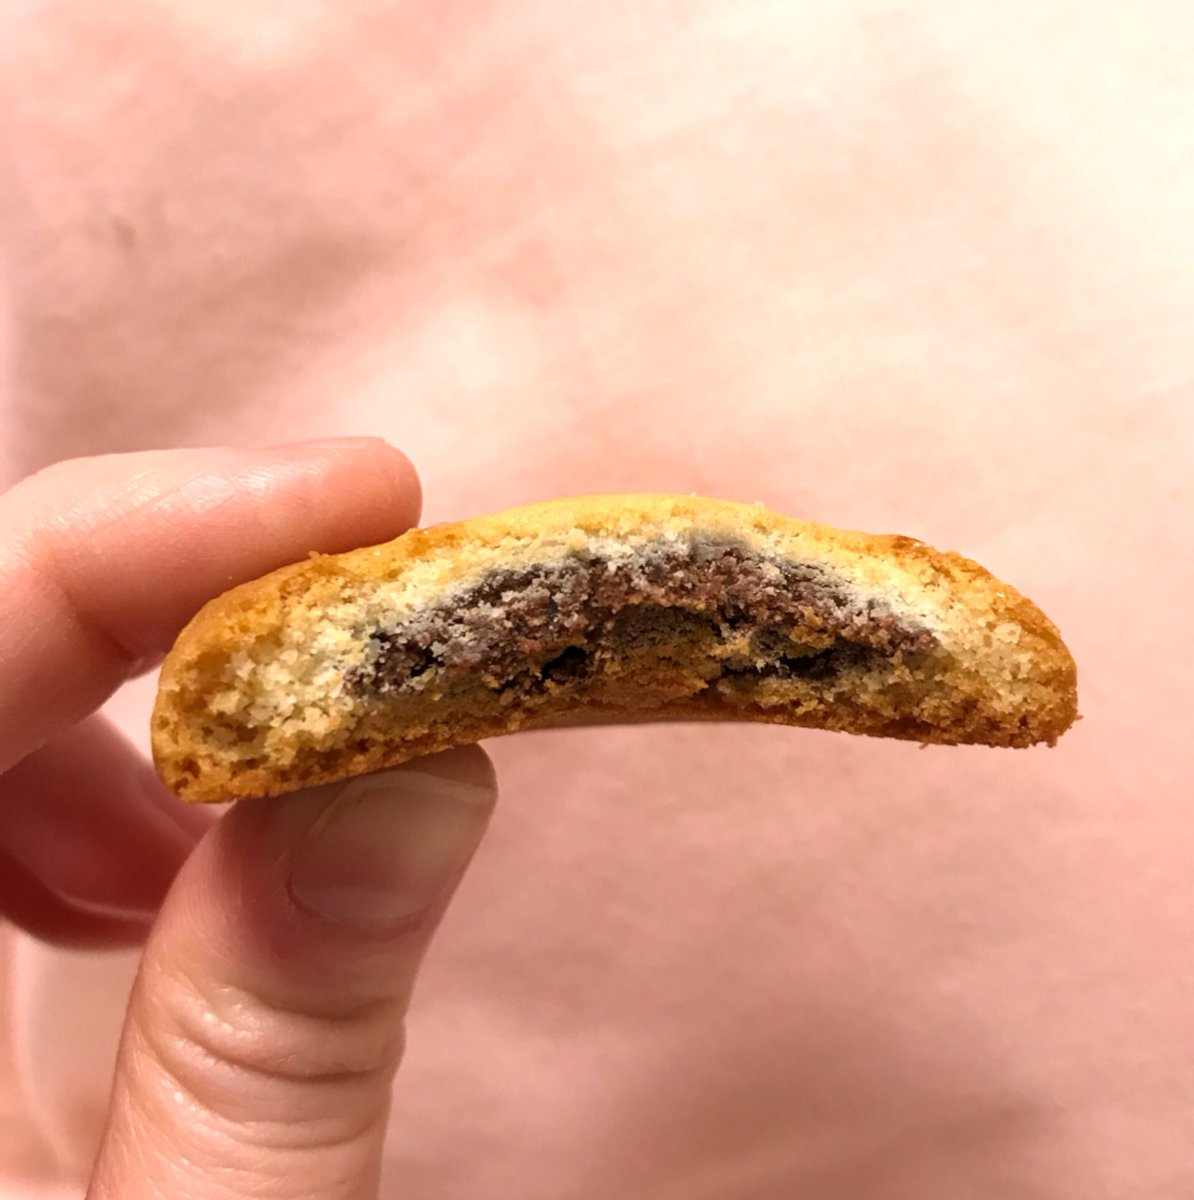 はなちょこちー على تويتر ブラウニーチョコチップクッキー 韓国のお土産でもらった マーケットオーのリアルブラウニーと同じ会社で作ってるみたい カントリーマアムより少し硬めの食感のクッキーの中にチョコブラウニーがイン ブラウニーの食感は忘れました